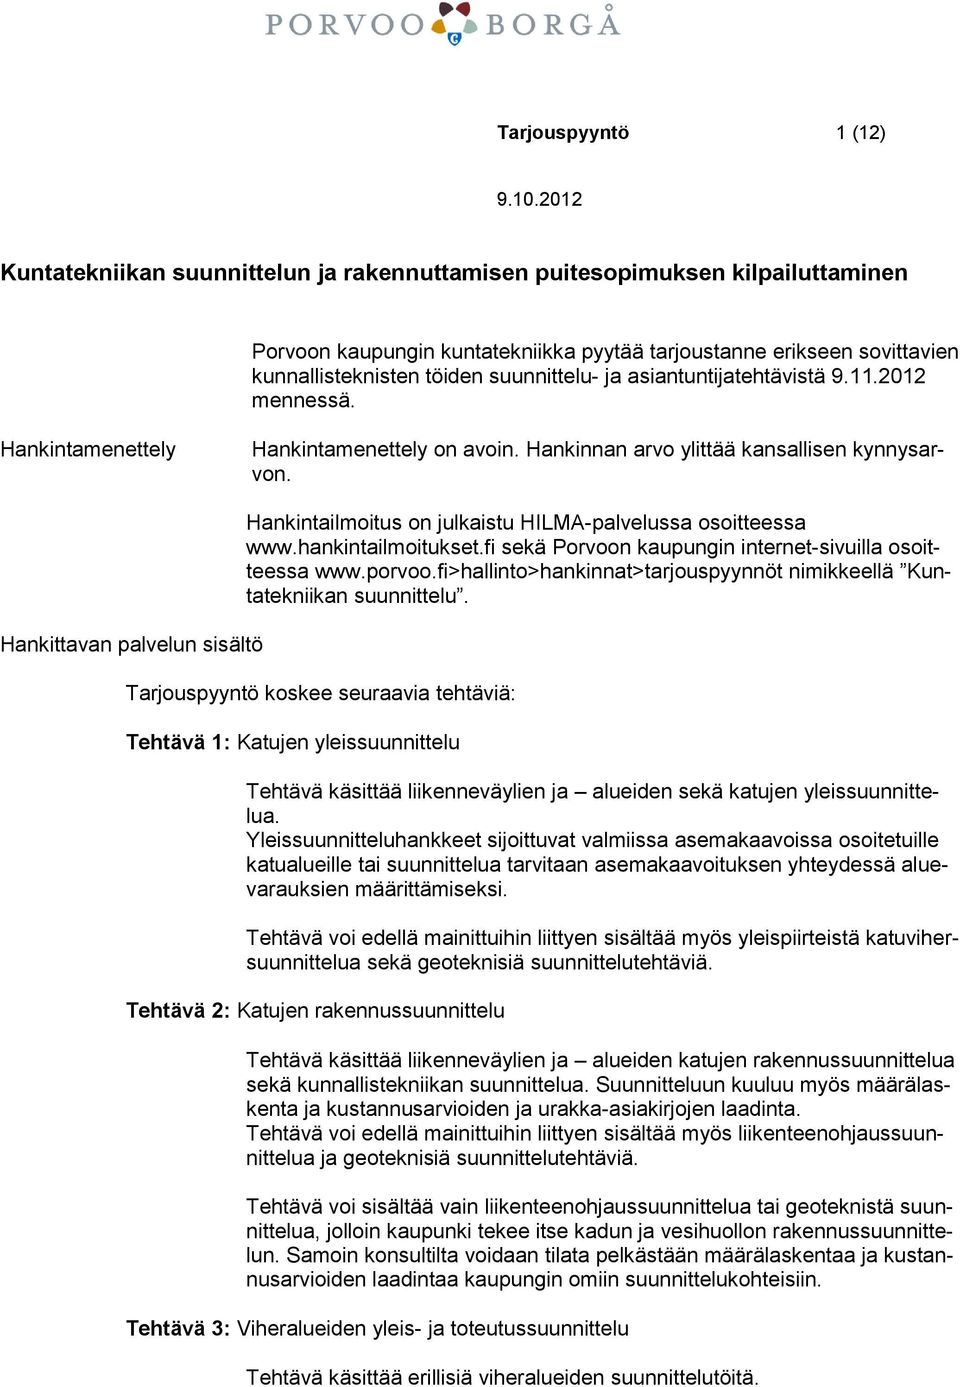 Hankittavan palvelun sisältö Hankintailmoitus on julkaistu HILMA-palvelussa osoitteessa www.hankintailmoitukset.fi sekä Porvoon kaupungin internet-sivuilla osoitteessa www.porvoo.